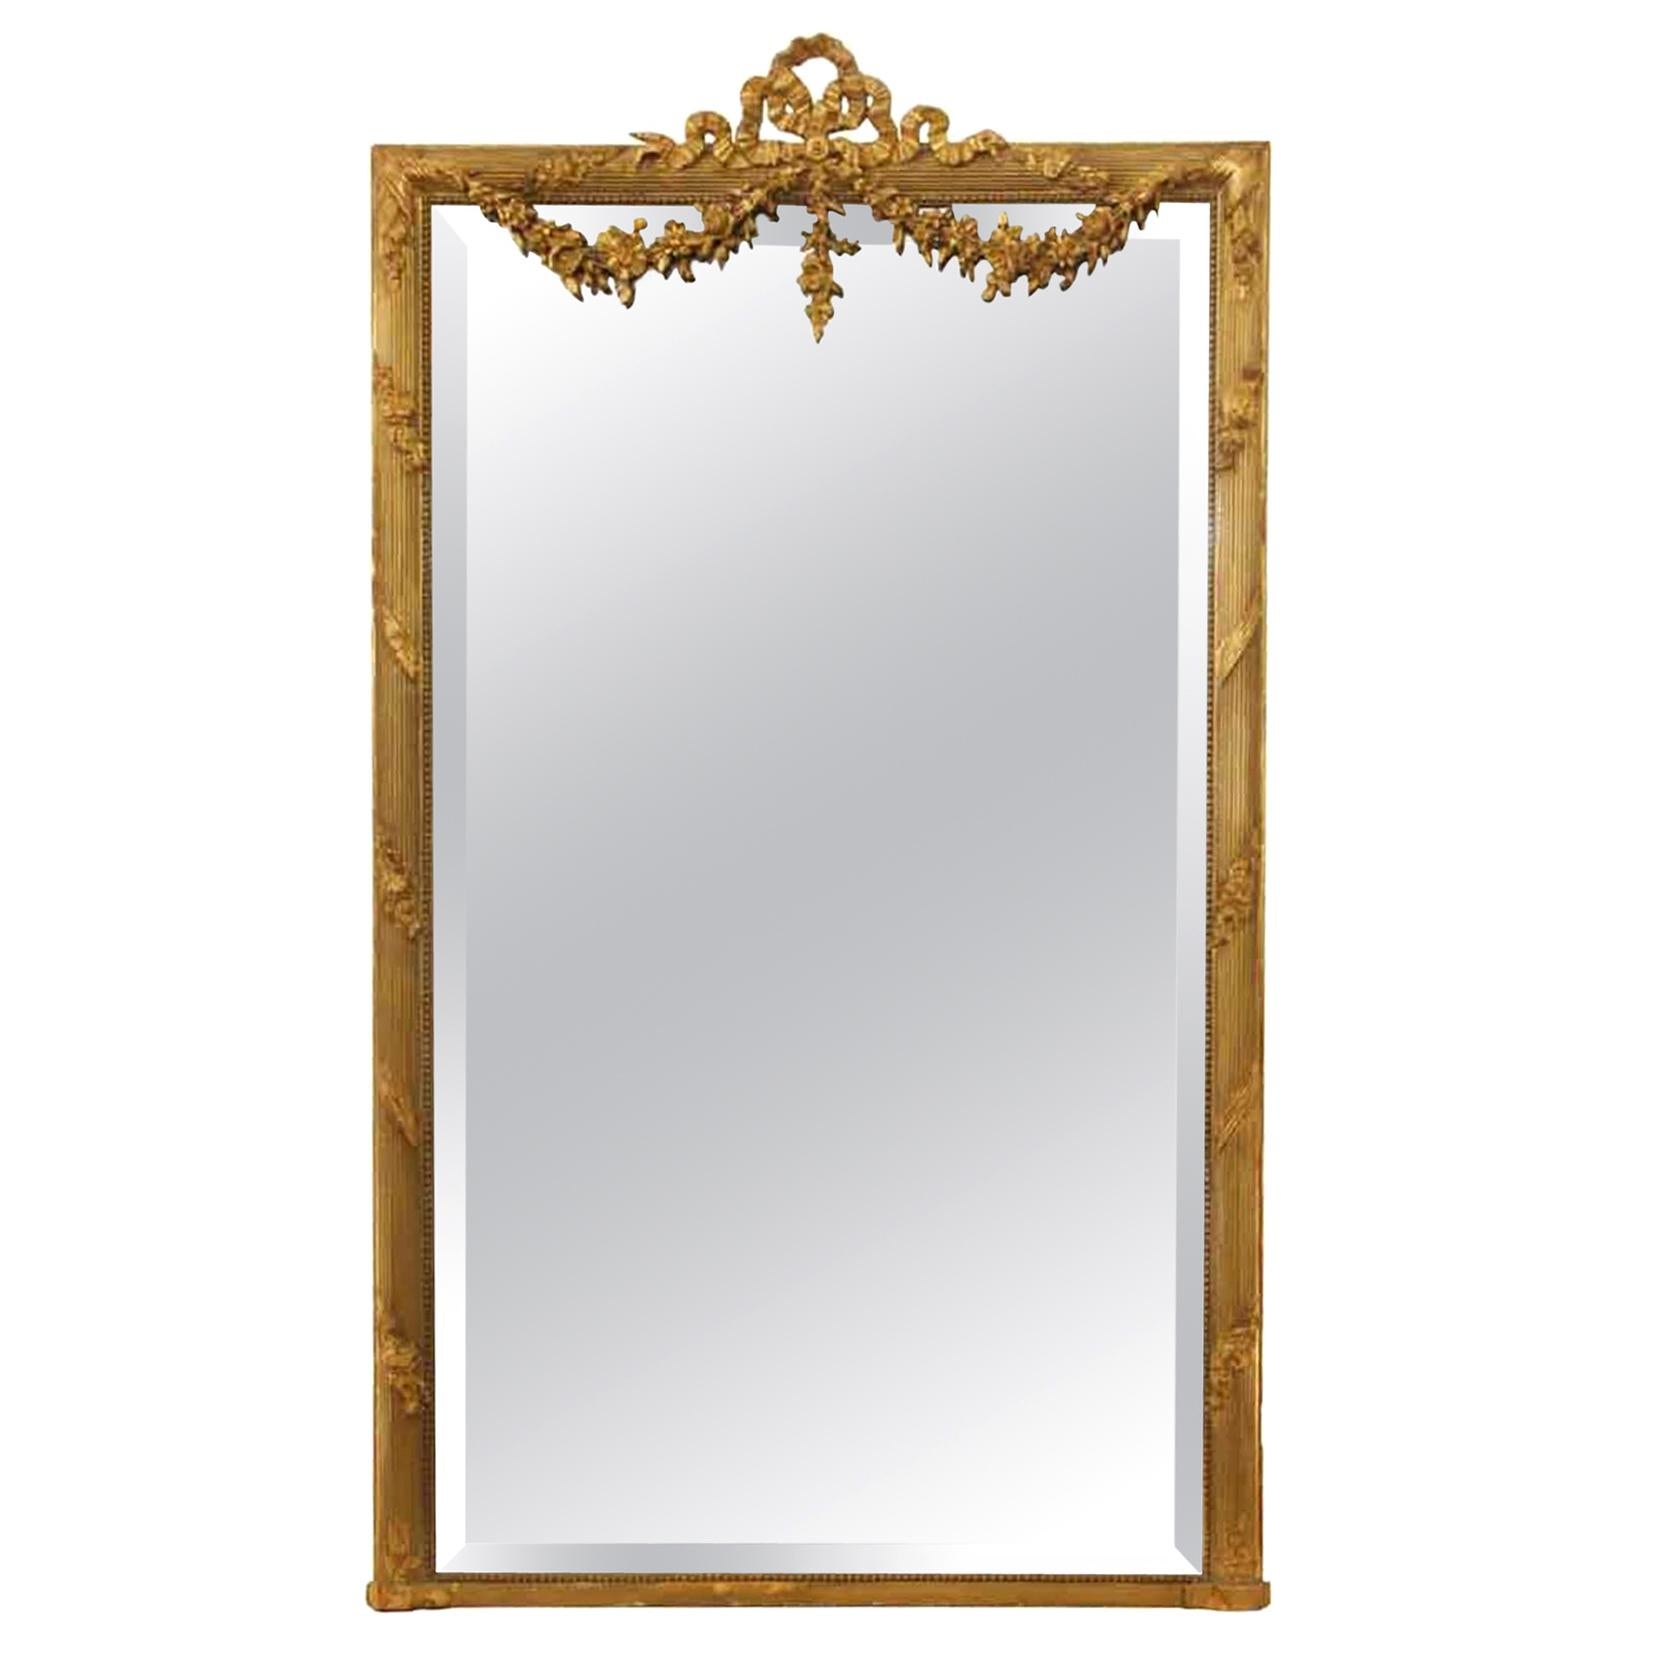 1900s European Rectangular Gold Gilded Ornate over Mantel Mirror